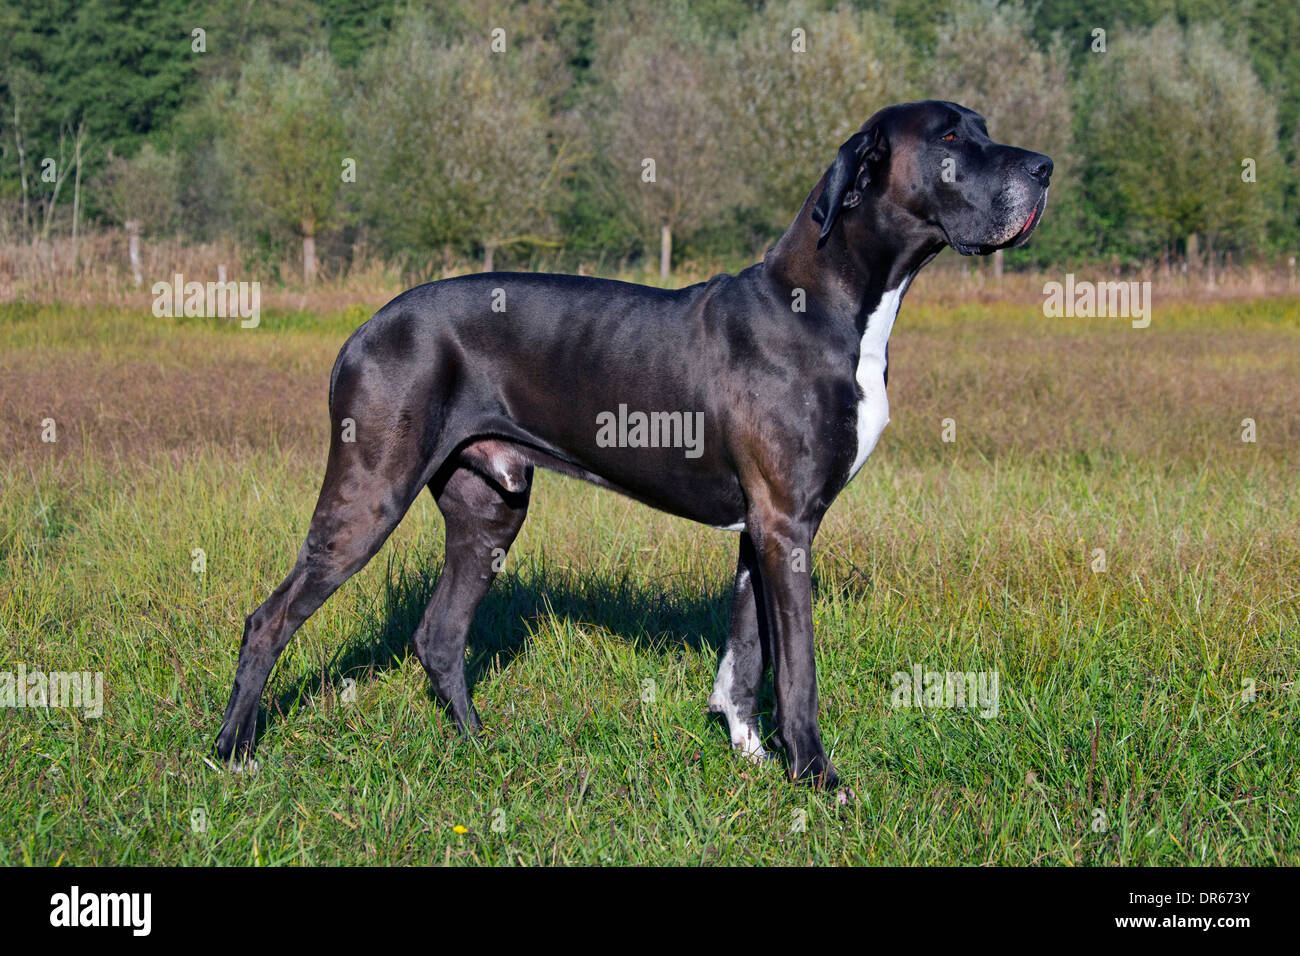 Great Dane / Deutsche Dogge / German Mastiff, one of the world's tallest dog breeds Stock Photo